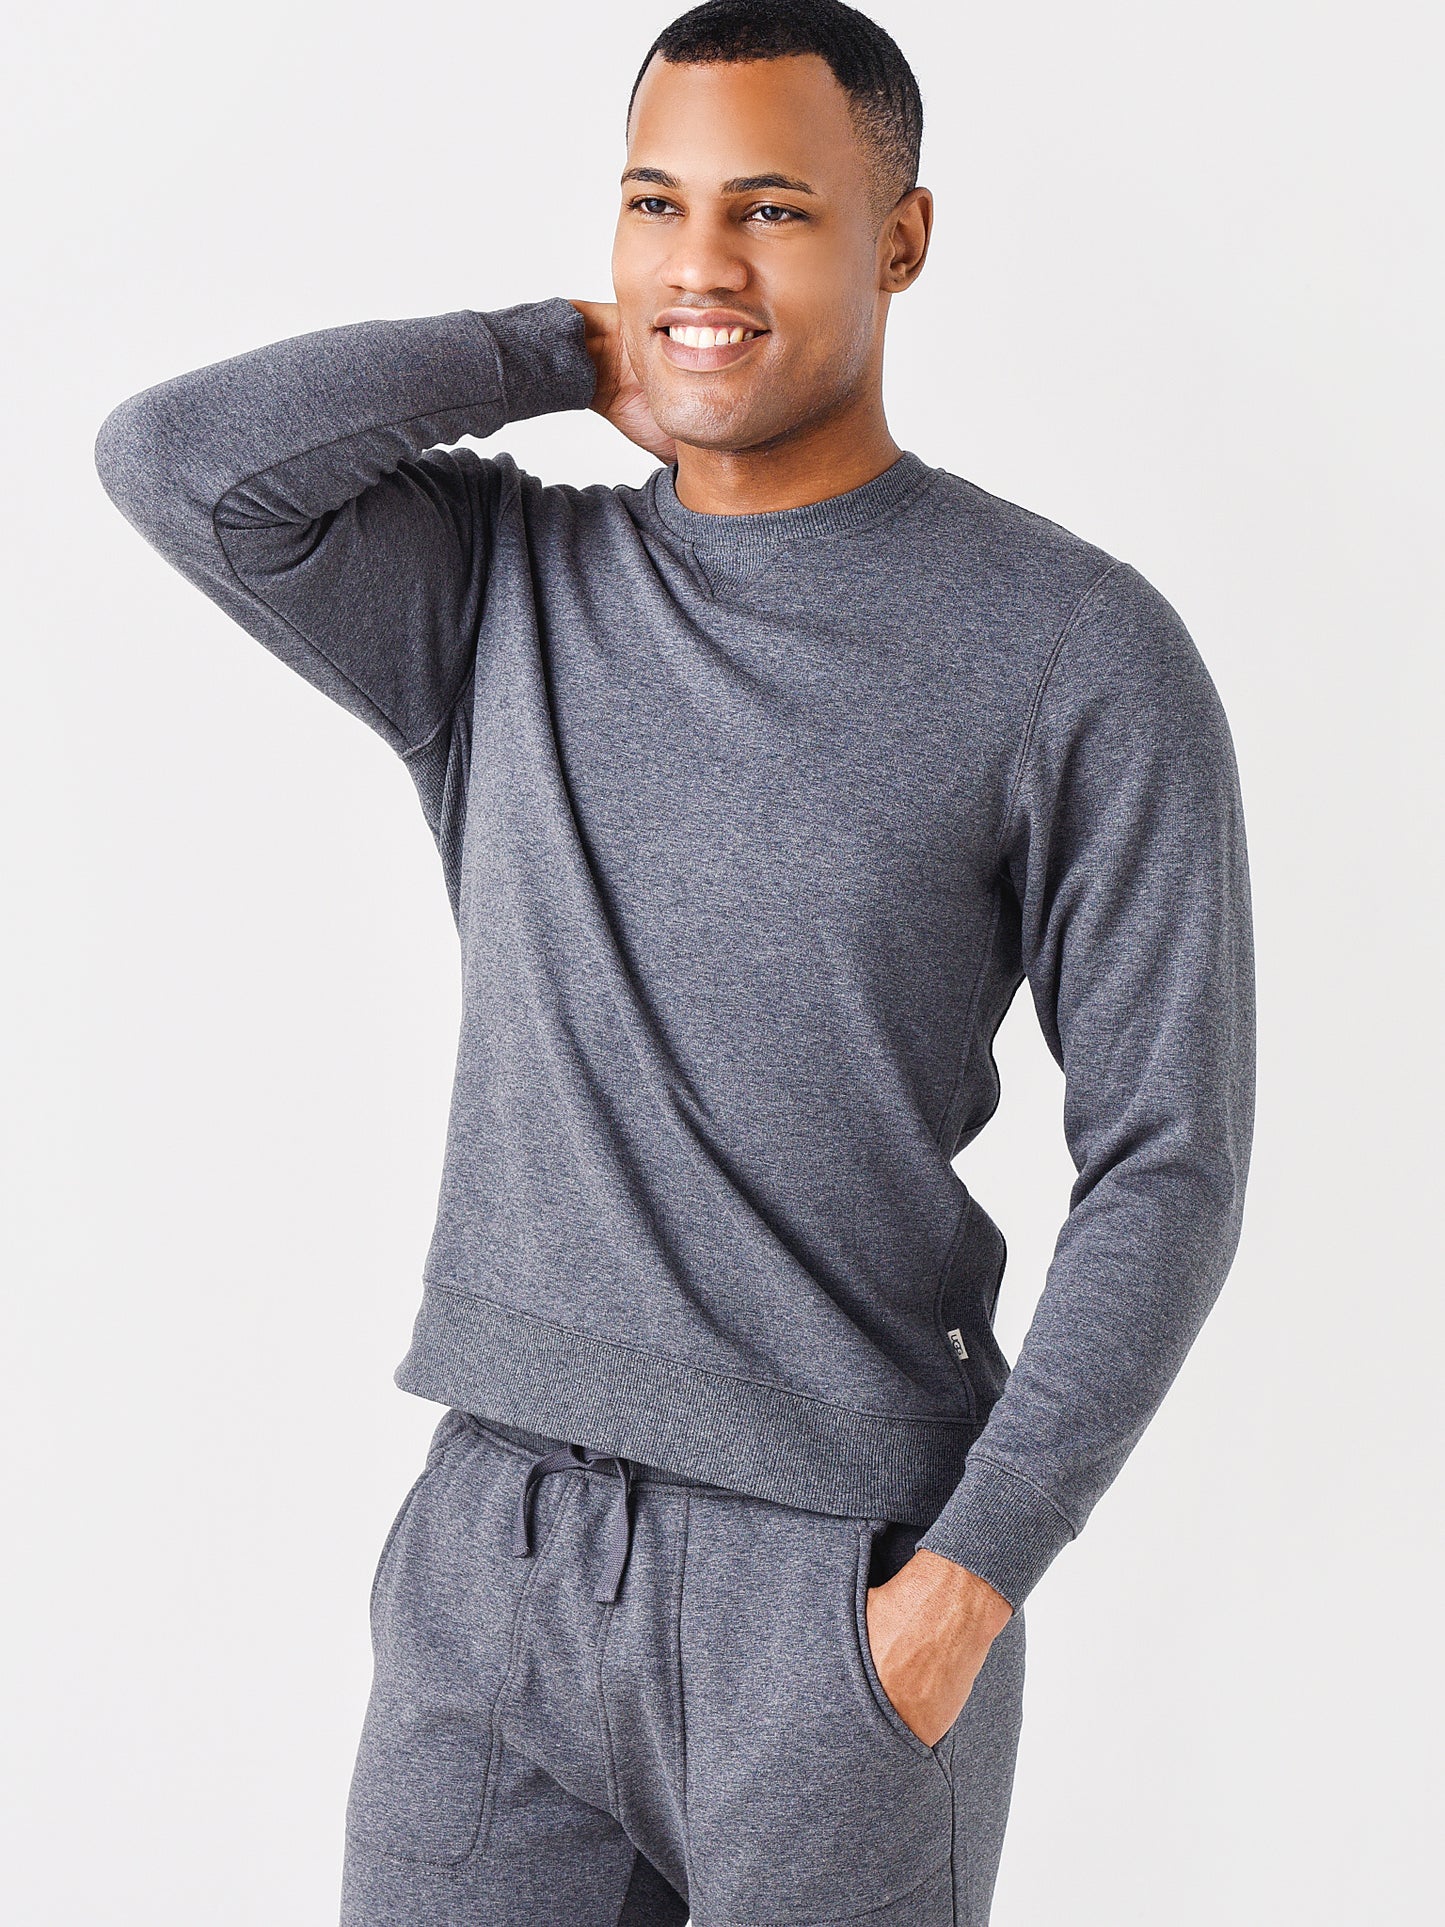 Ugg Men's Harland Fleece Sweater